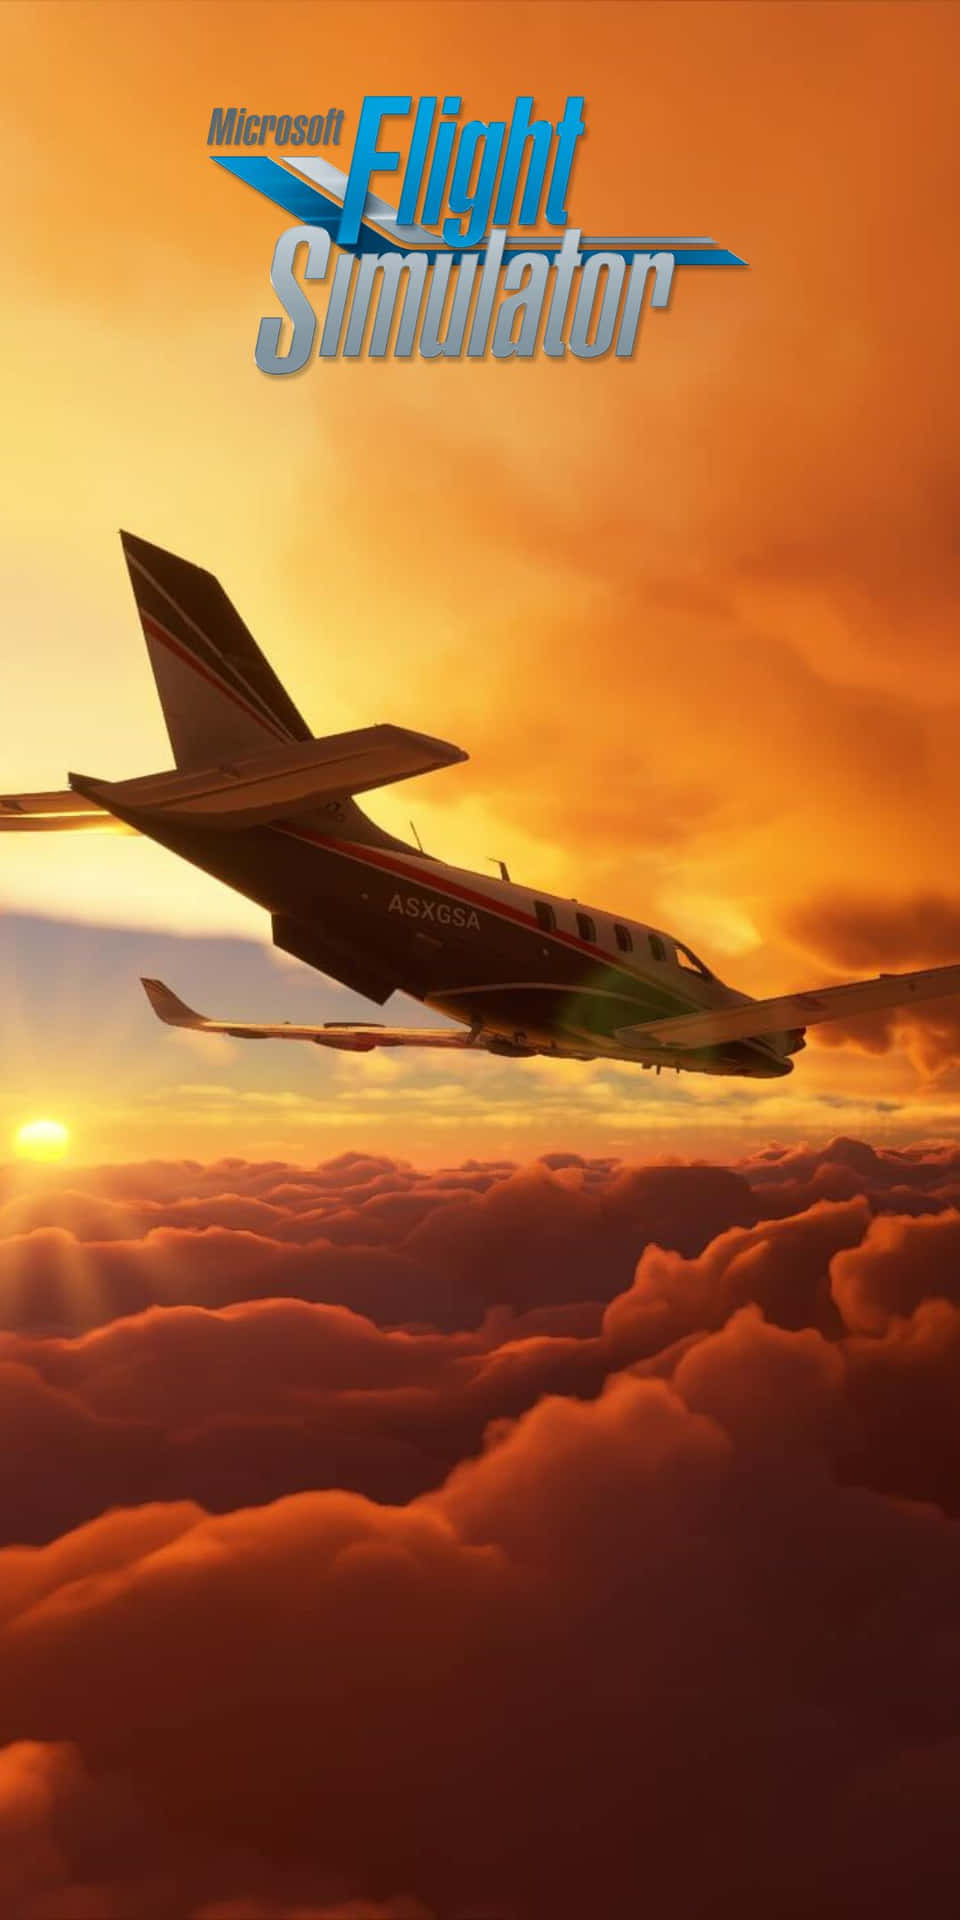 Tadin Flygupplevelse Till Nya Höjder Med Pixel 3 Och Microsoft Flight Simulator.